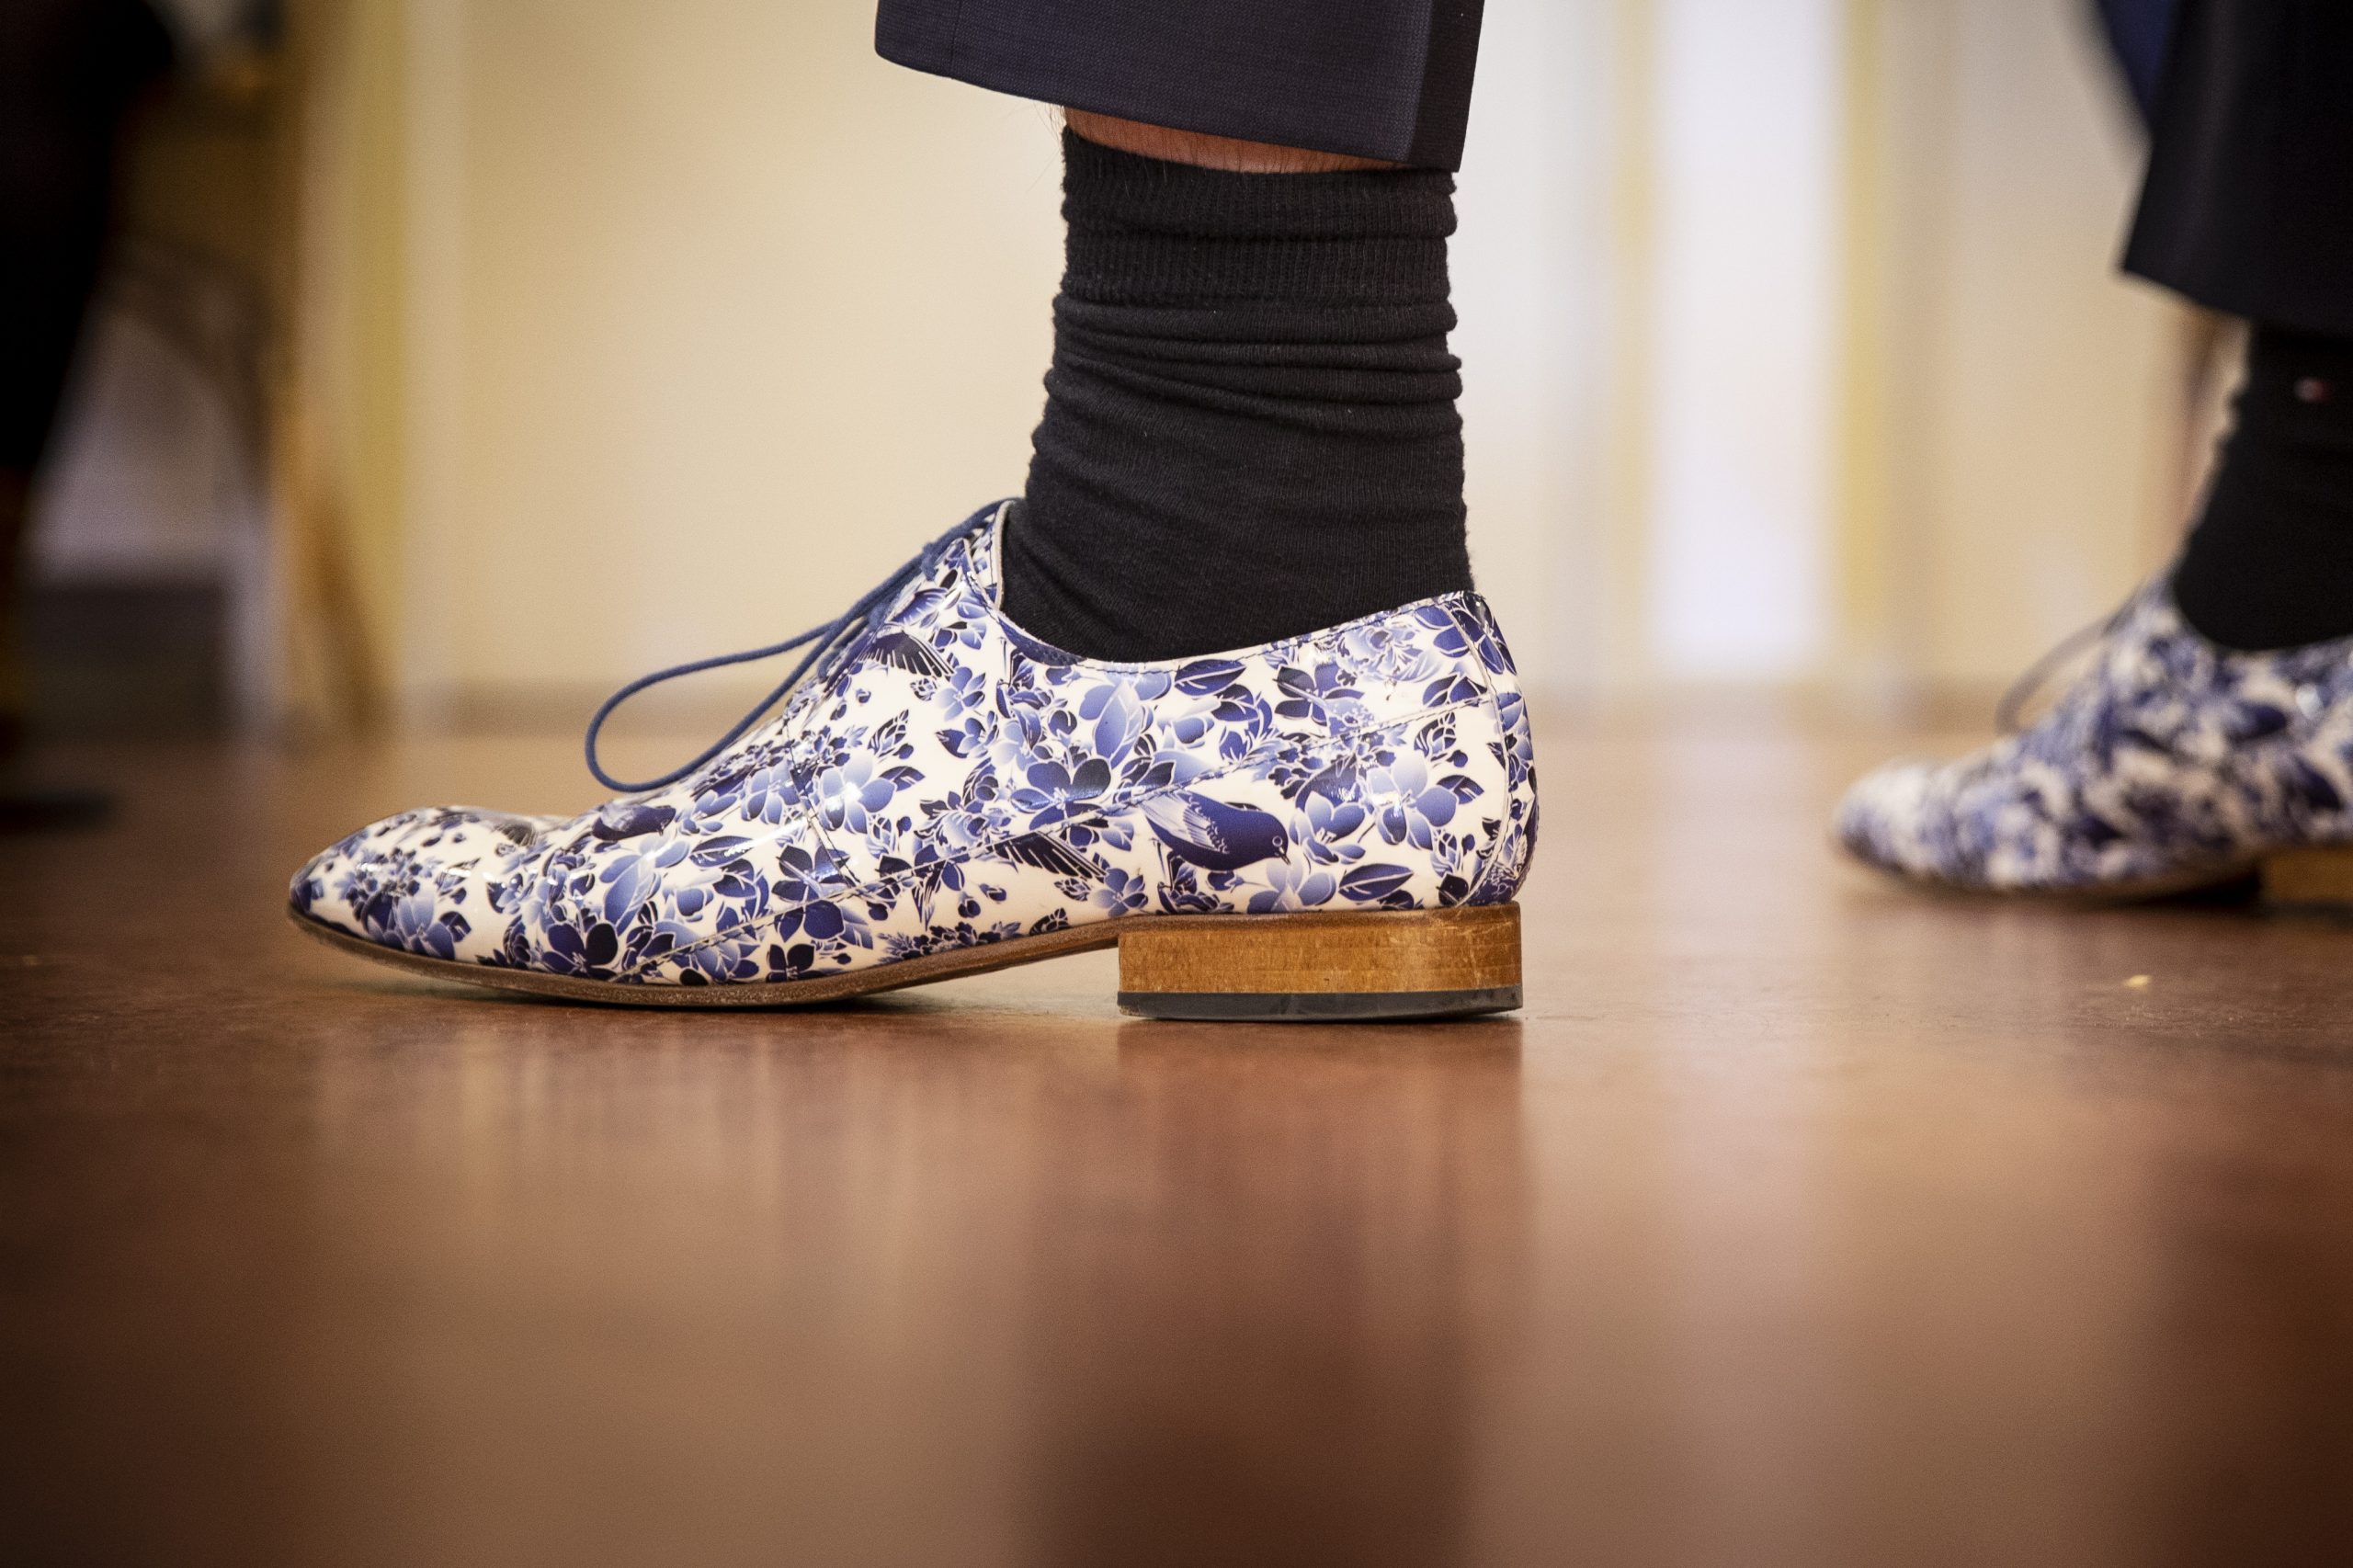 Een opvallend paar schoenen van minister Hugo de Jonge bij een bezoek aan een verpleeghuis tijdens de coronacrisis. Foto: ANP/Pieter Stam de Jonge